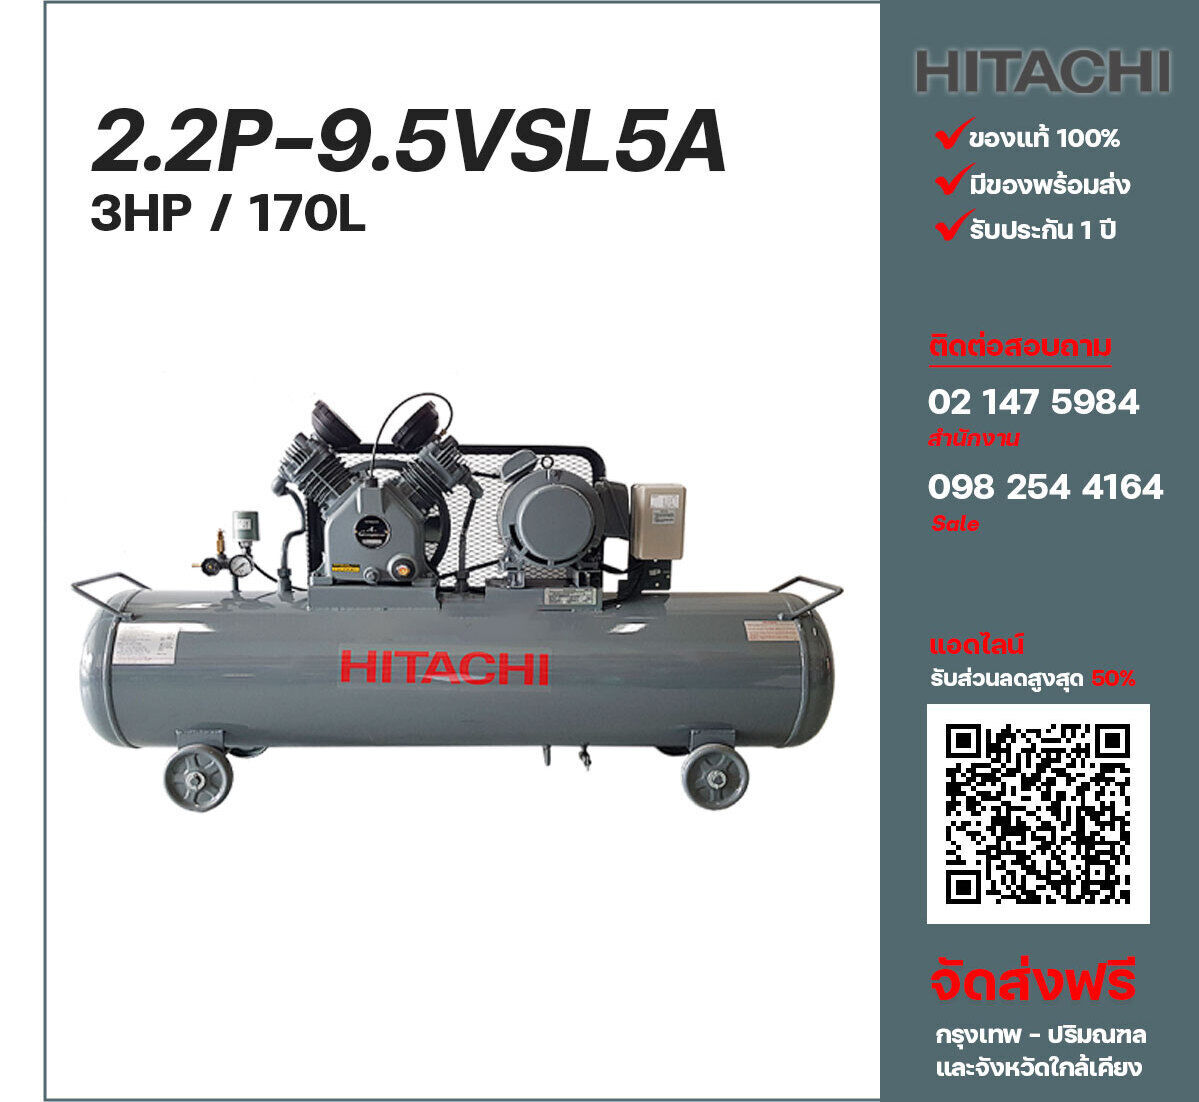 ปั๊มลมฮิตาชิ HITACHI รุ่นใช้น้ำมัน 2.2P-9.5VSL5A220V ปั๊มลมลูกสูบ ขนาด 2 สูบ 3 แรงม้า 170 ลิตร Hitachi พร้อมมอเตอร์ Hitachi ไฟ 220V ส่งฟรี กรุงเทพฯ-ปริมณฑล รับประกัน 1 ปี
